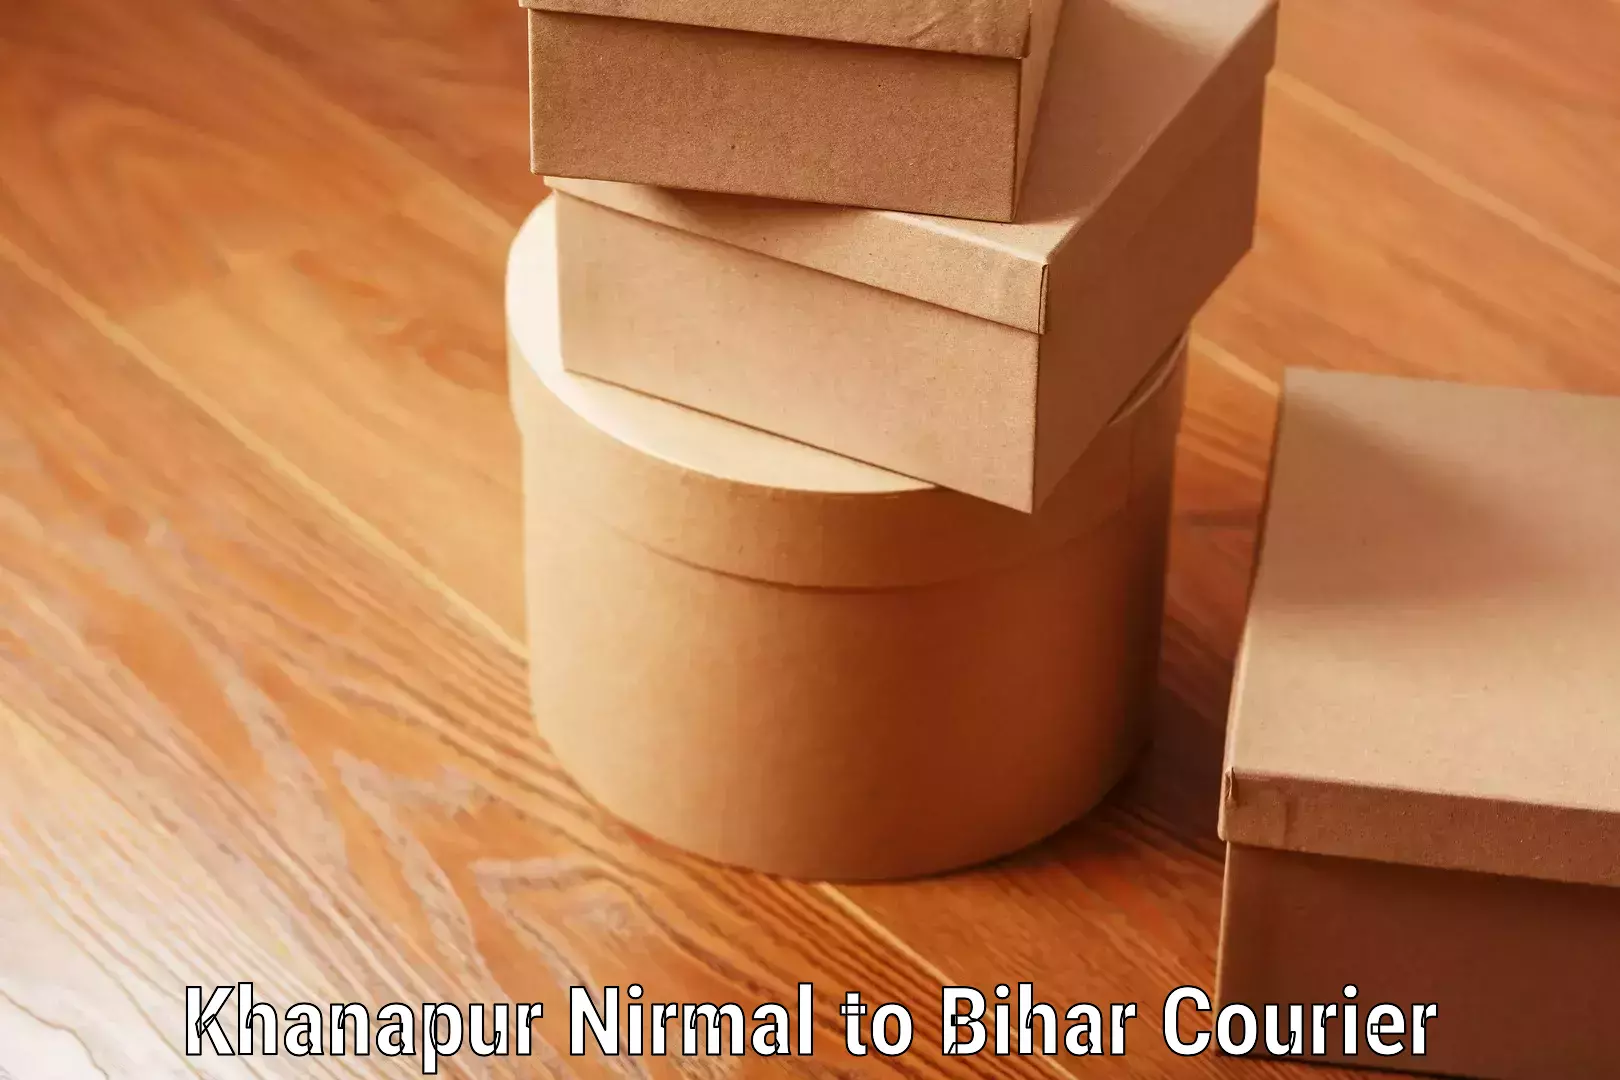 Luggage delivery estimate Khanapur Nirmal to Mahnar Bazar